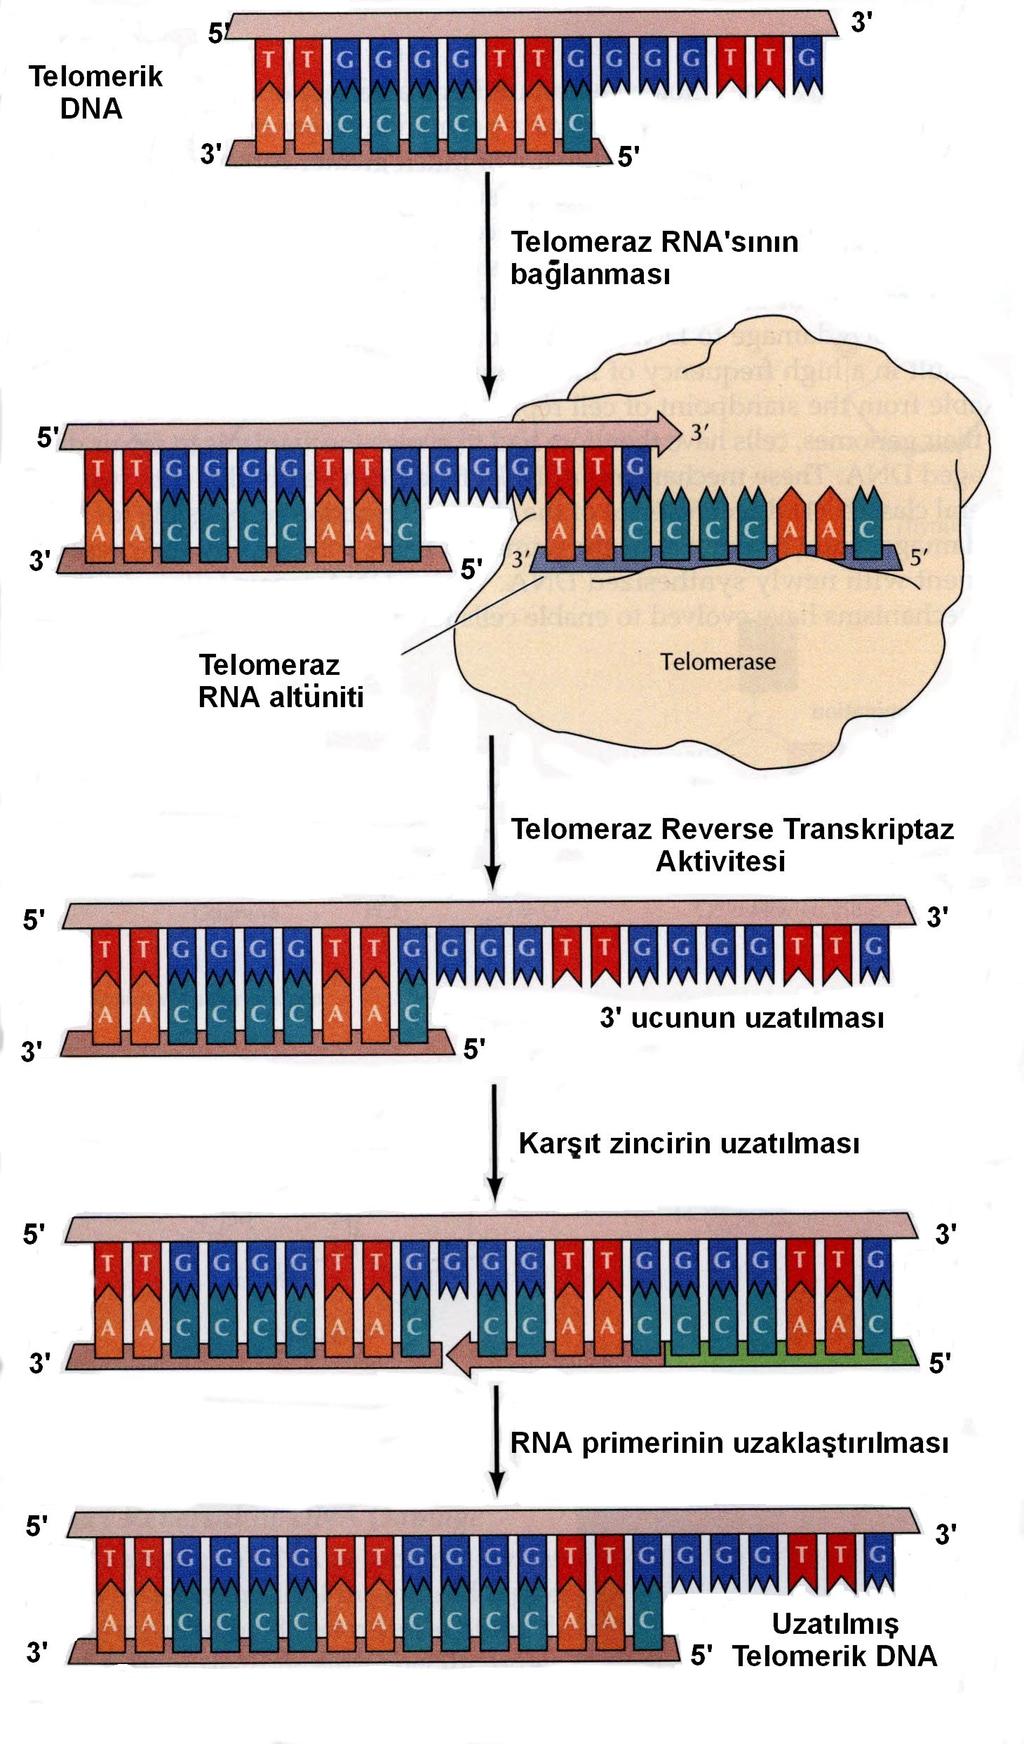 maların yokluunda, her hücre bölünmesinde kromozomal DNA'nın 3' ucunda, yaklaık 50-200 nükleotidlik kayıp olmakta ve sonuçta "hücresel yalanma" gelimektedir (25,26).